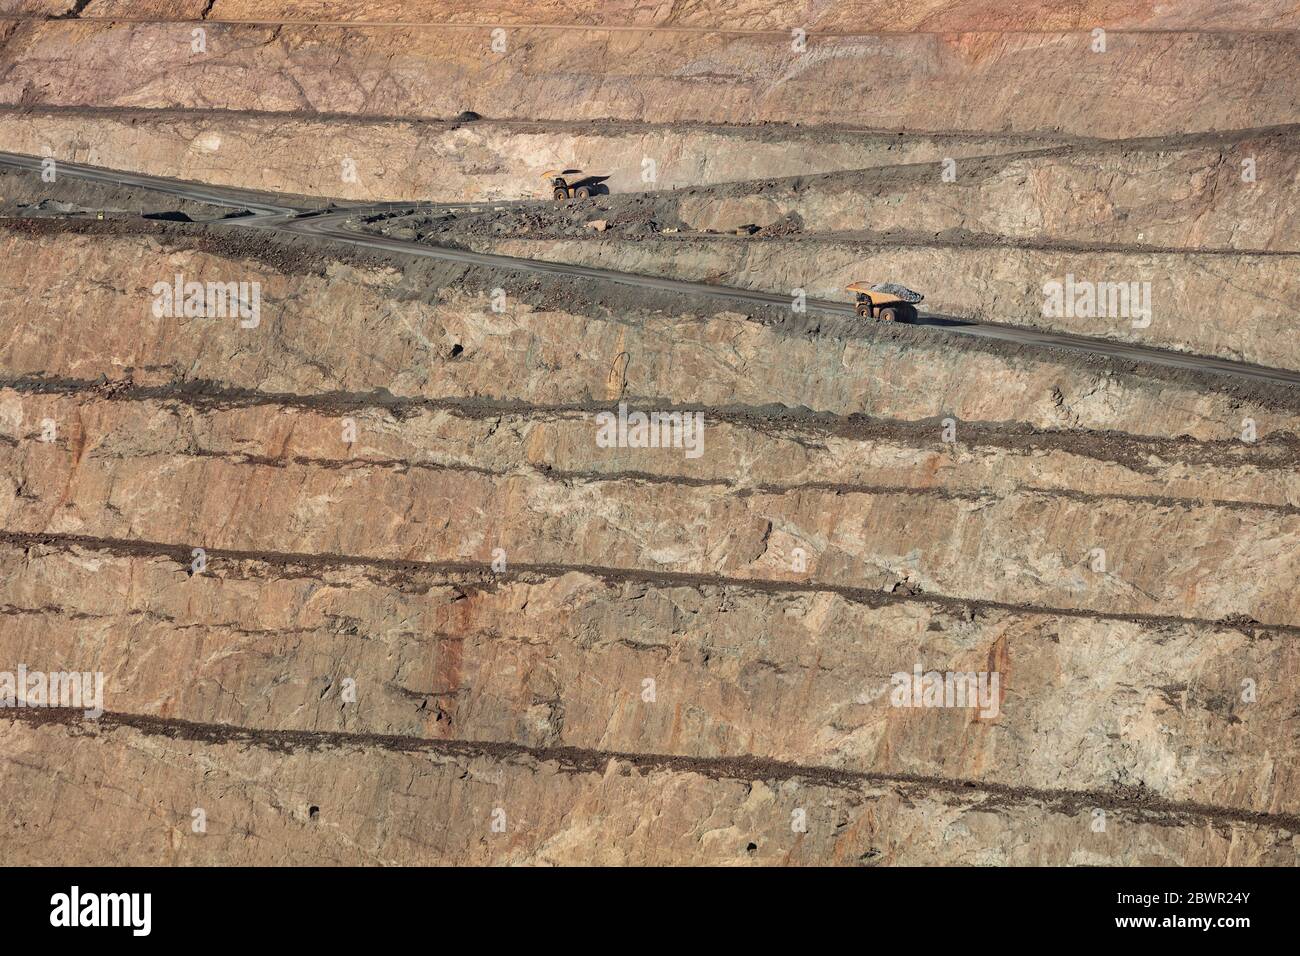 Kalgoorlie Western Australia 14. November 2019 : LKW arbeiten in der Super Pit, einer Goldmine in Kalgoorlie, Western Australia Stockfoto